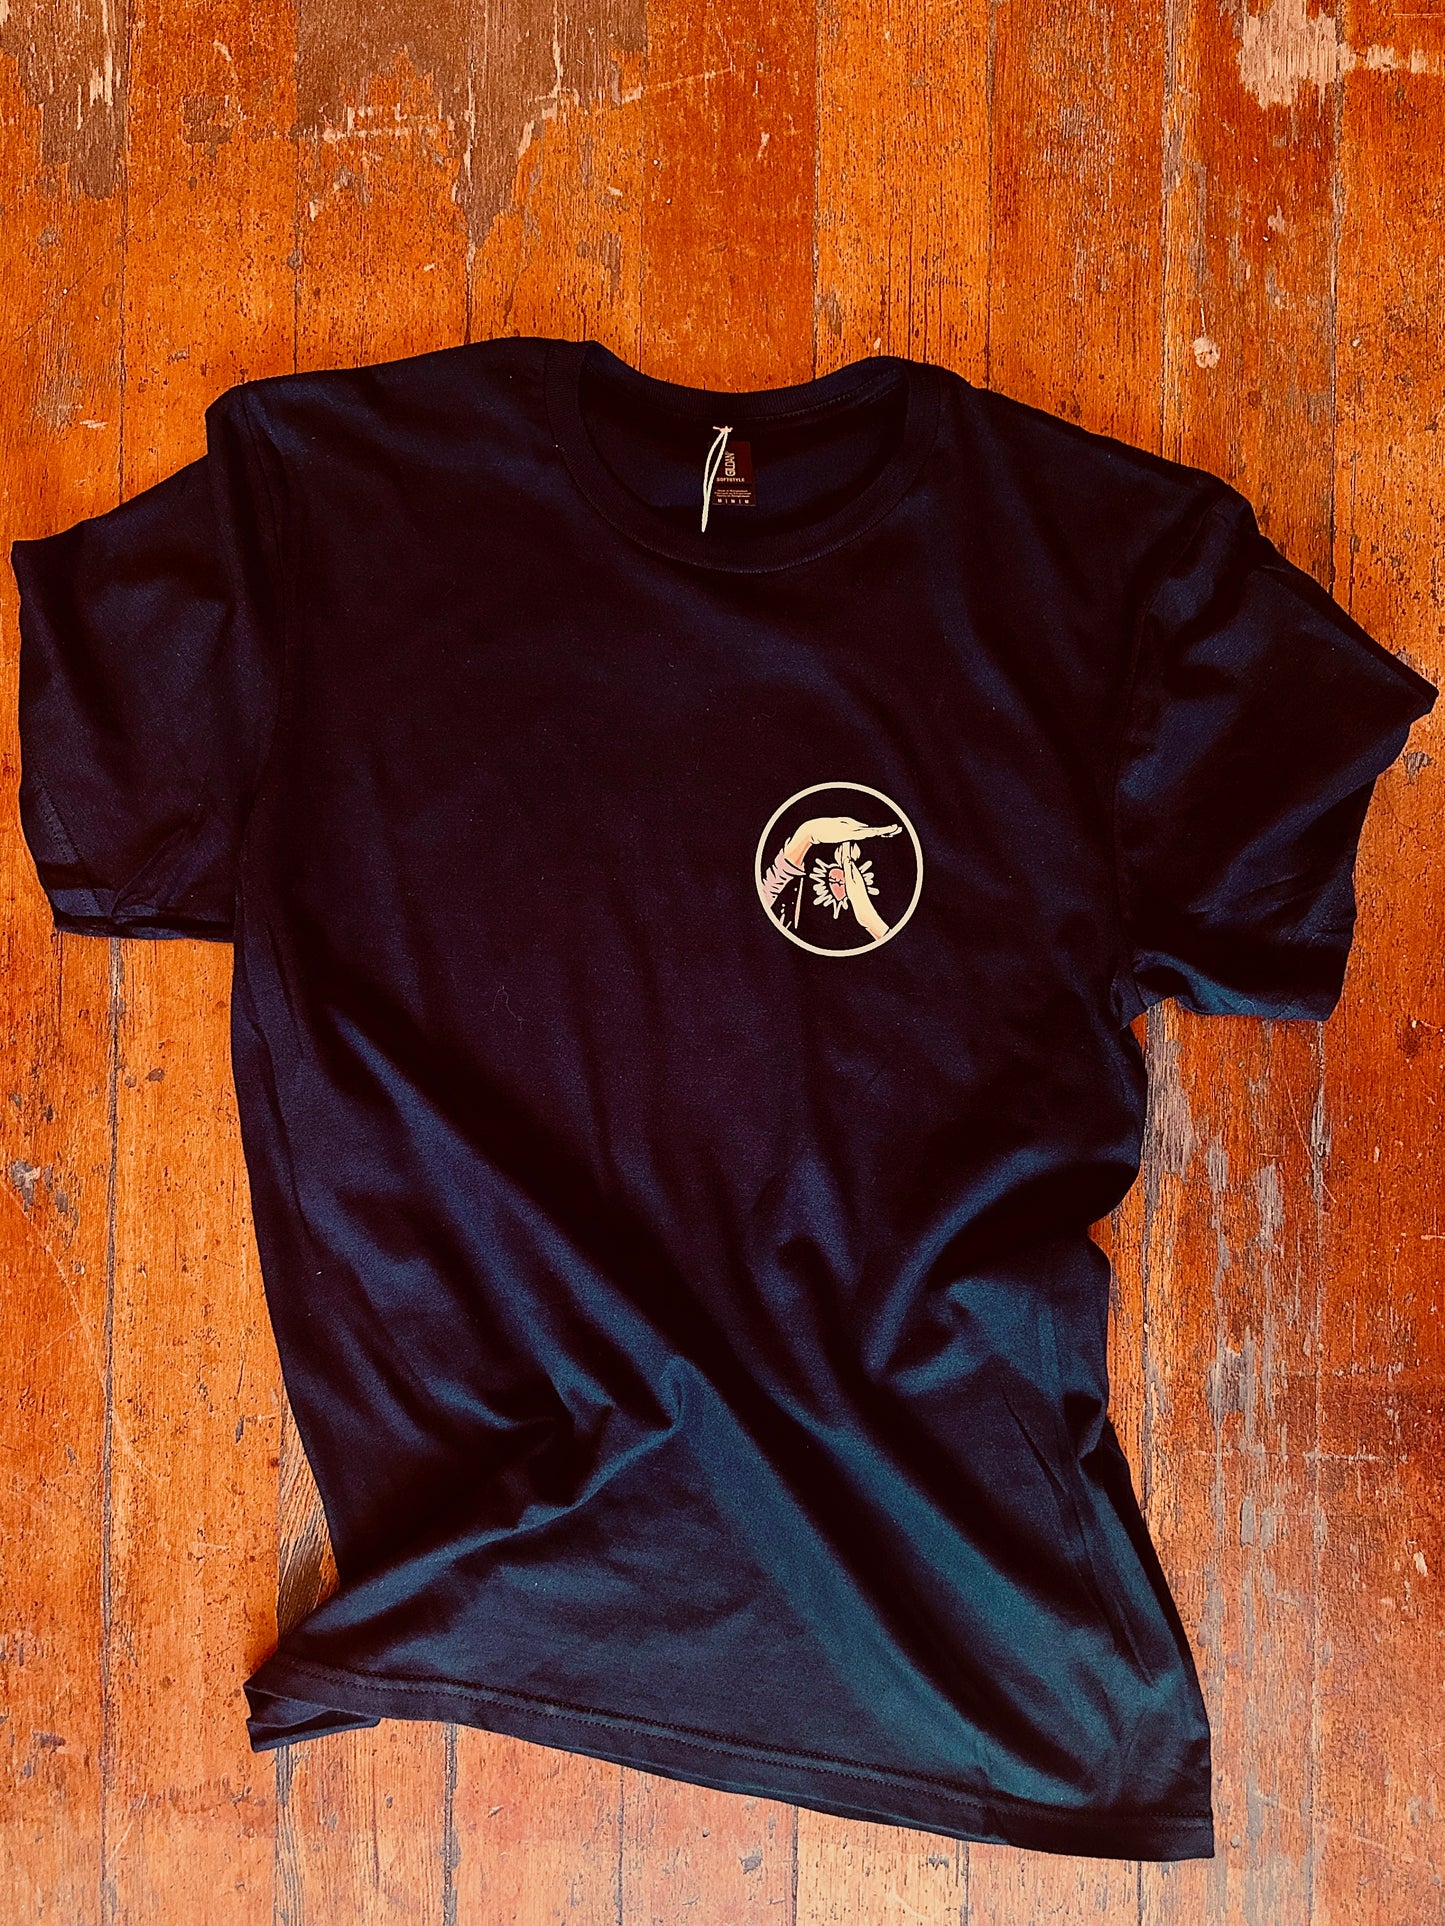 La Virgencita De Tucson T-Shirt